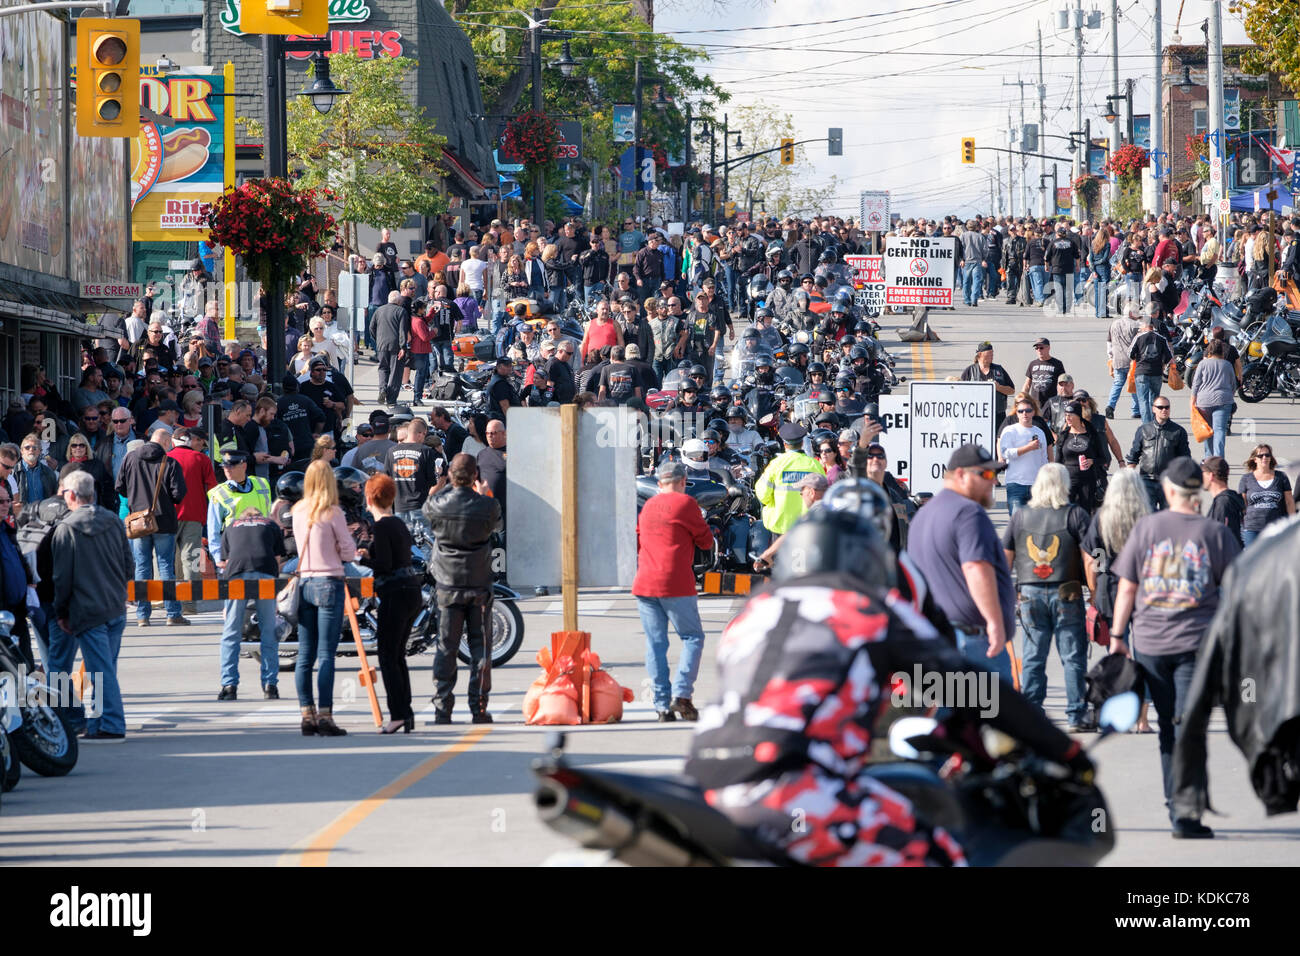 Hafen Dover, Ontario, Kanada, 13. Oktober 2017. Menschenmassen Spaziergang entlang der Main Street im Hafen von Dover. Tausende von Motorradfahrern aus ganz Kanada und den Vereinigten Staaten erhalten Sie zusammen für den Freitag, 13. Motorrad Rallye, jeden Freitag den 13. im Hafen von Dover, Ontario, Kanada, seit 1981 statt. Die Veranstaltung ist eine der größten single - Tag Motorrad Ereignisse in der Welt. Dieses Jahr, das milde Wetter beigetragen, die für eine große Anzahl der Biker und Schaulustige, mit Hunderten von custom motorräder, Anbieter, live Musik und interessante Menschen zu sehen. Credit: Rubens Alarcon/Alamy leben Nachrichten Stockfoto